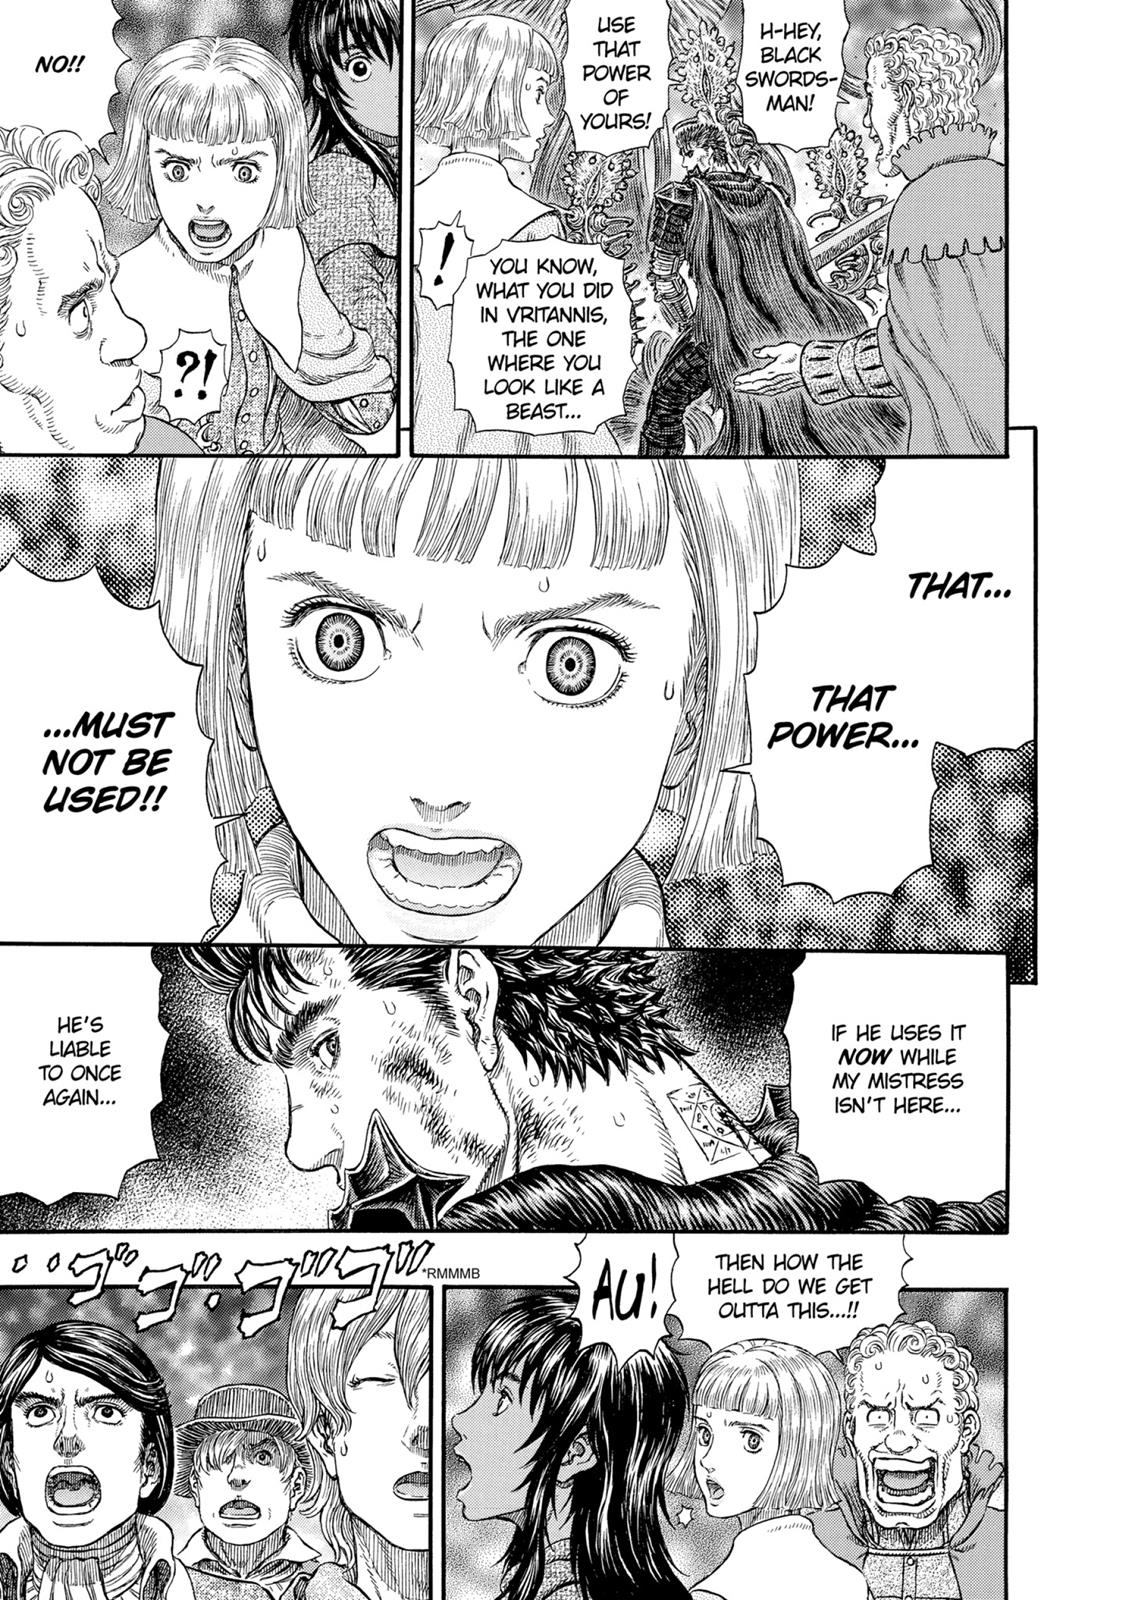 Berserk Manga Chapter 314 image 19